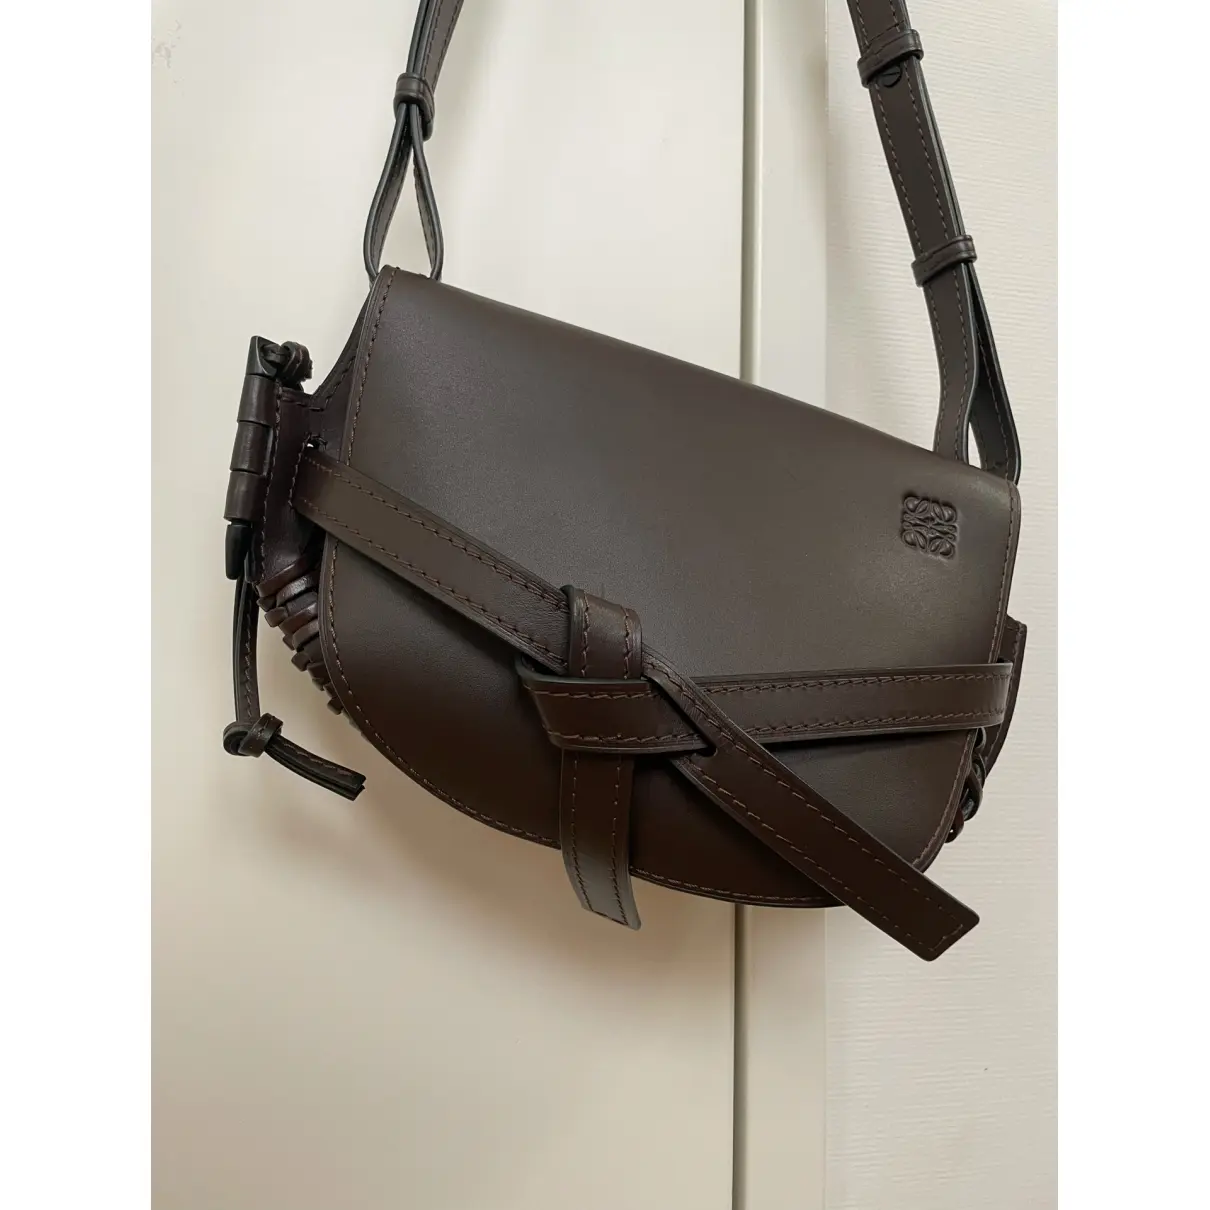 Buy Loewe Gate leather crossbody bag online